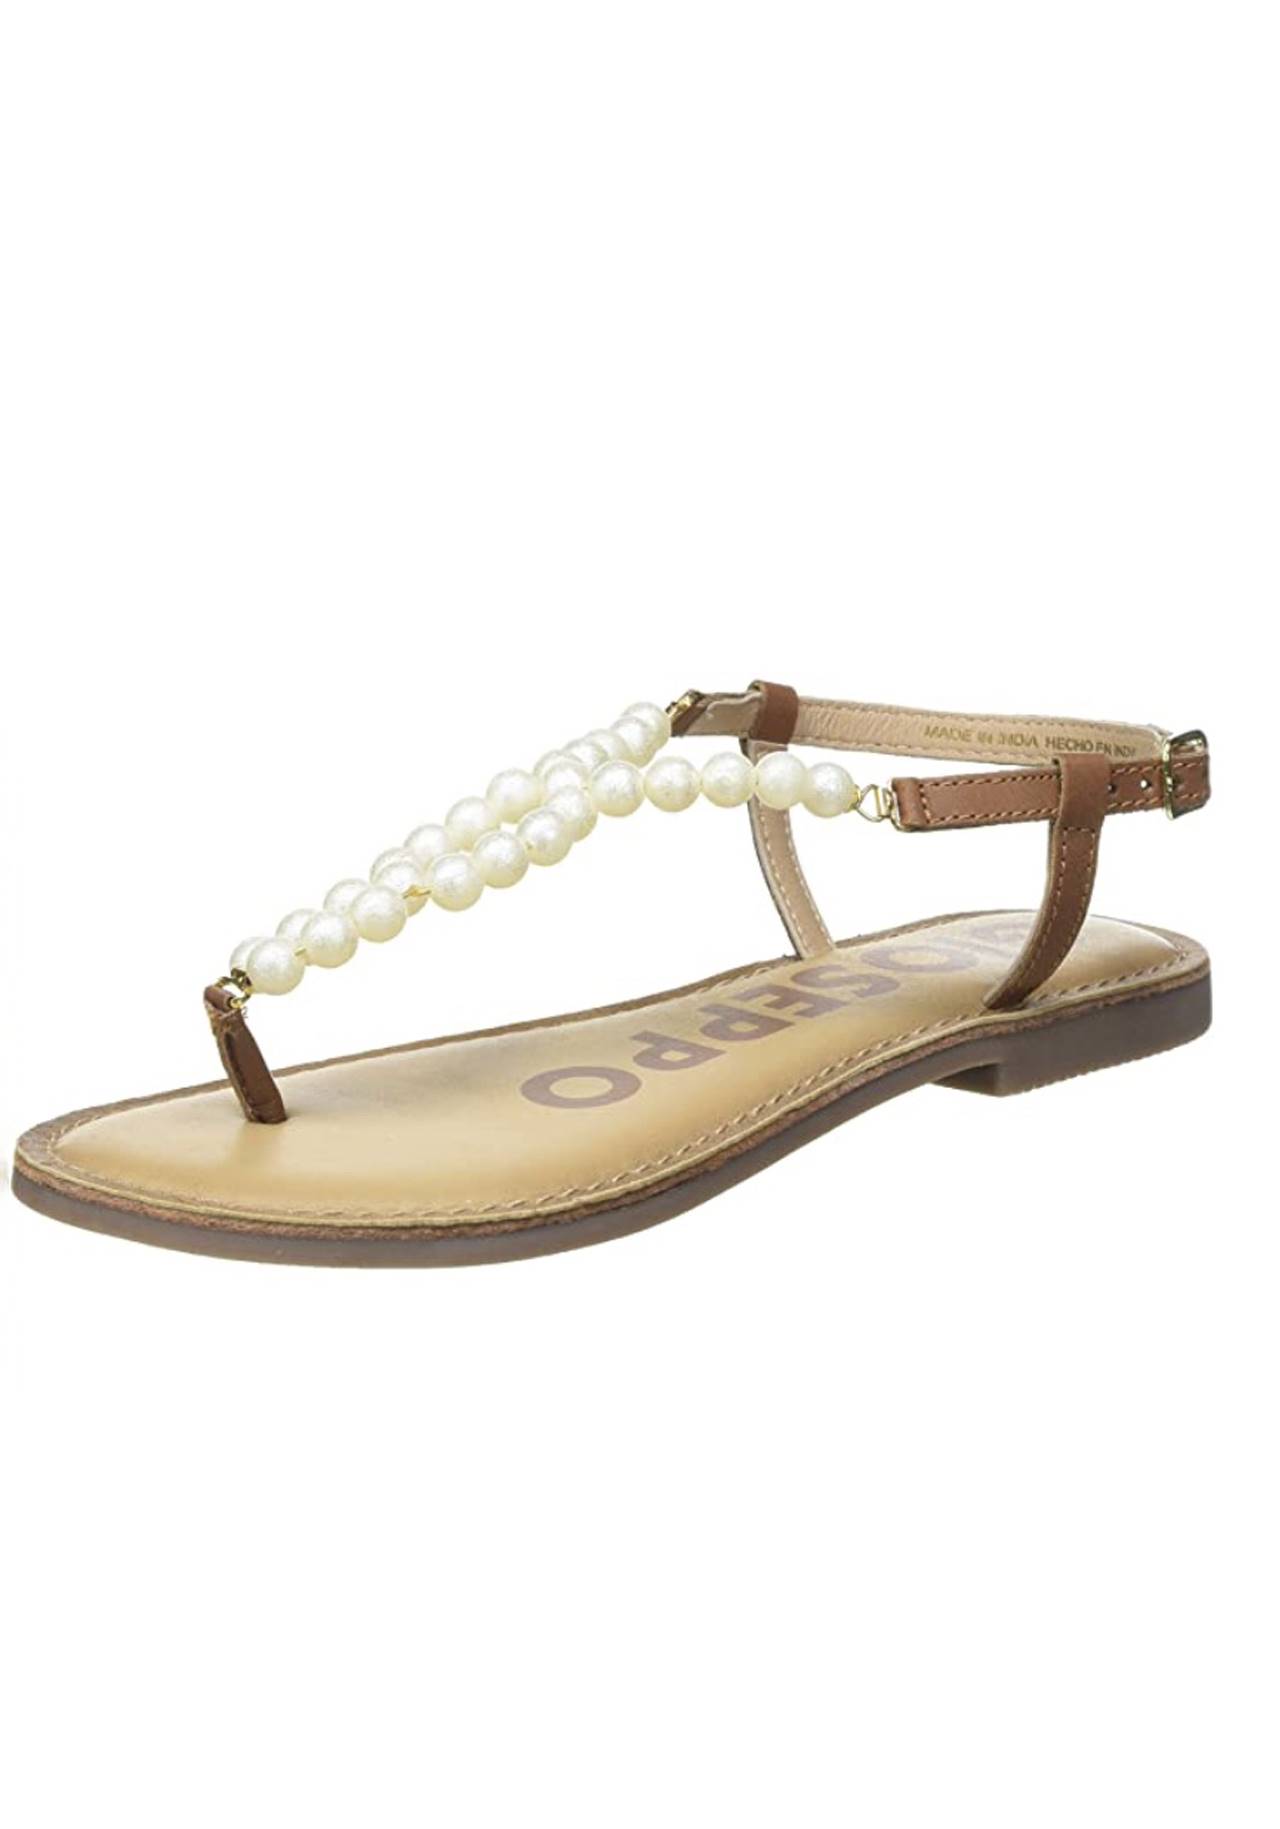 Sandalias de perla Amazon